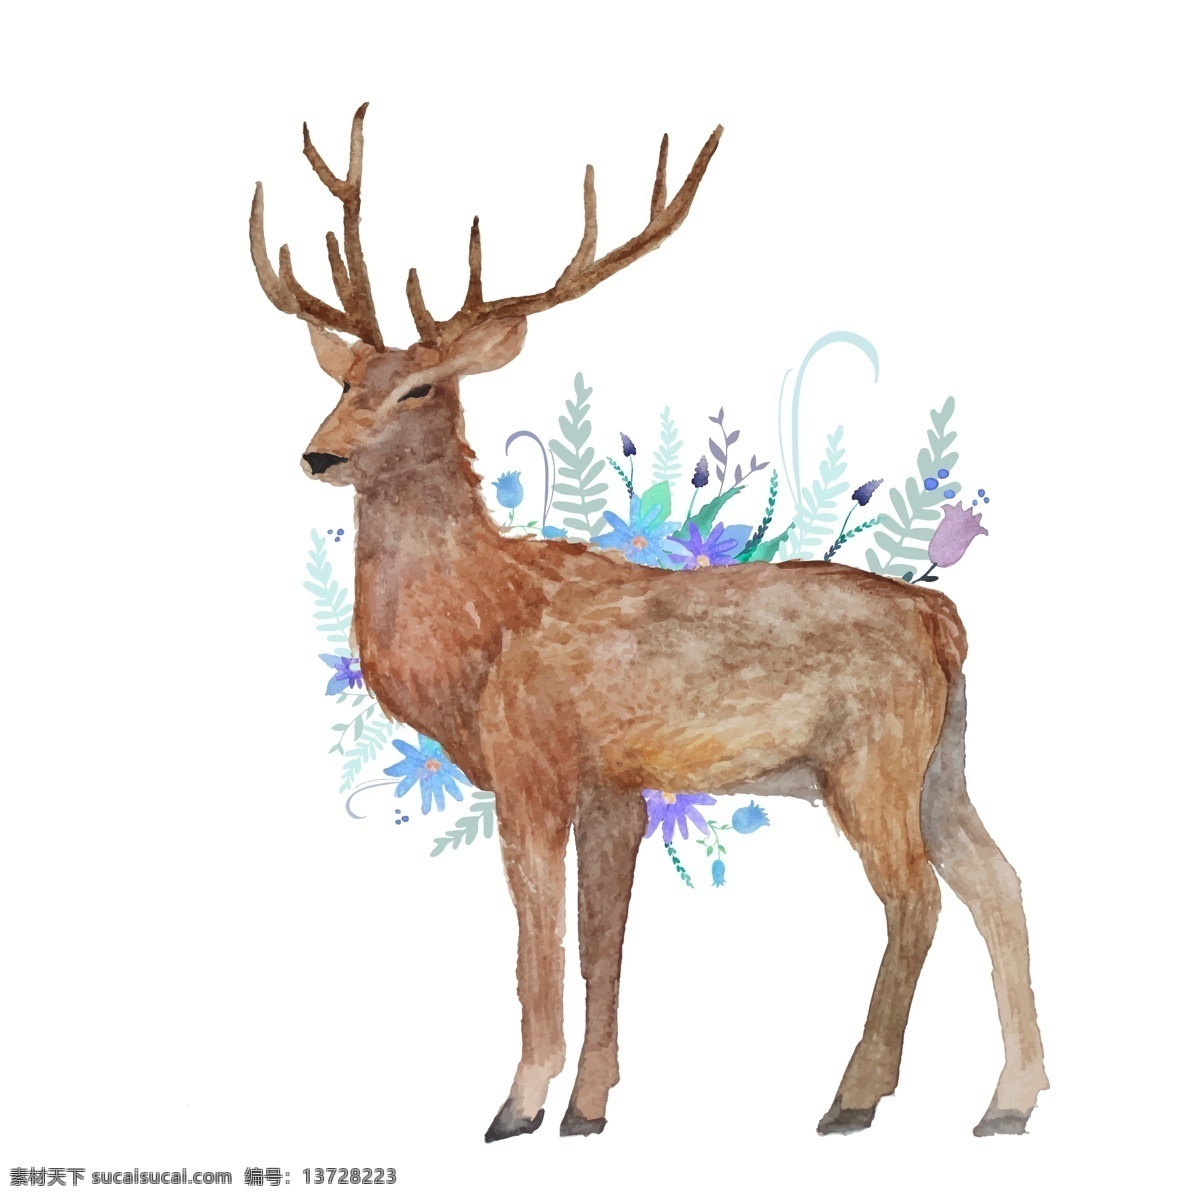 小鹿 卡通 森林动物 麋鹿 ai矢量图 装饰插画 印刷背景图 设计素材 插画 梅花鹿